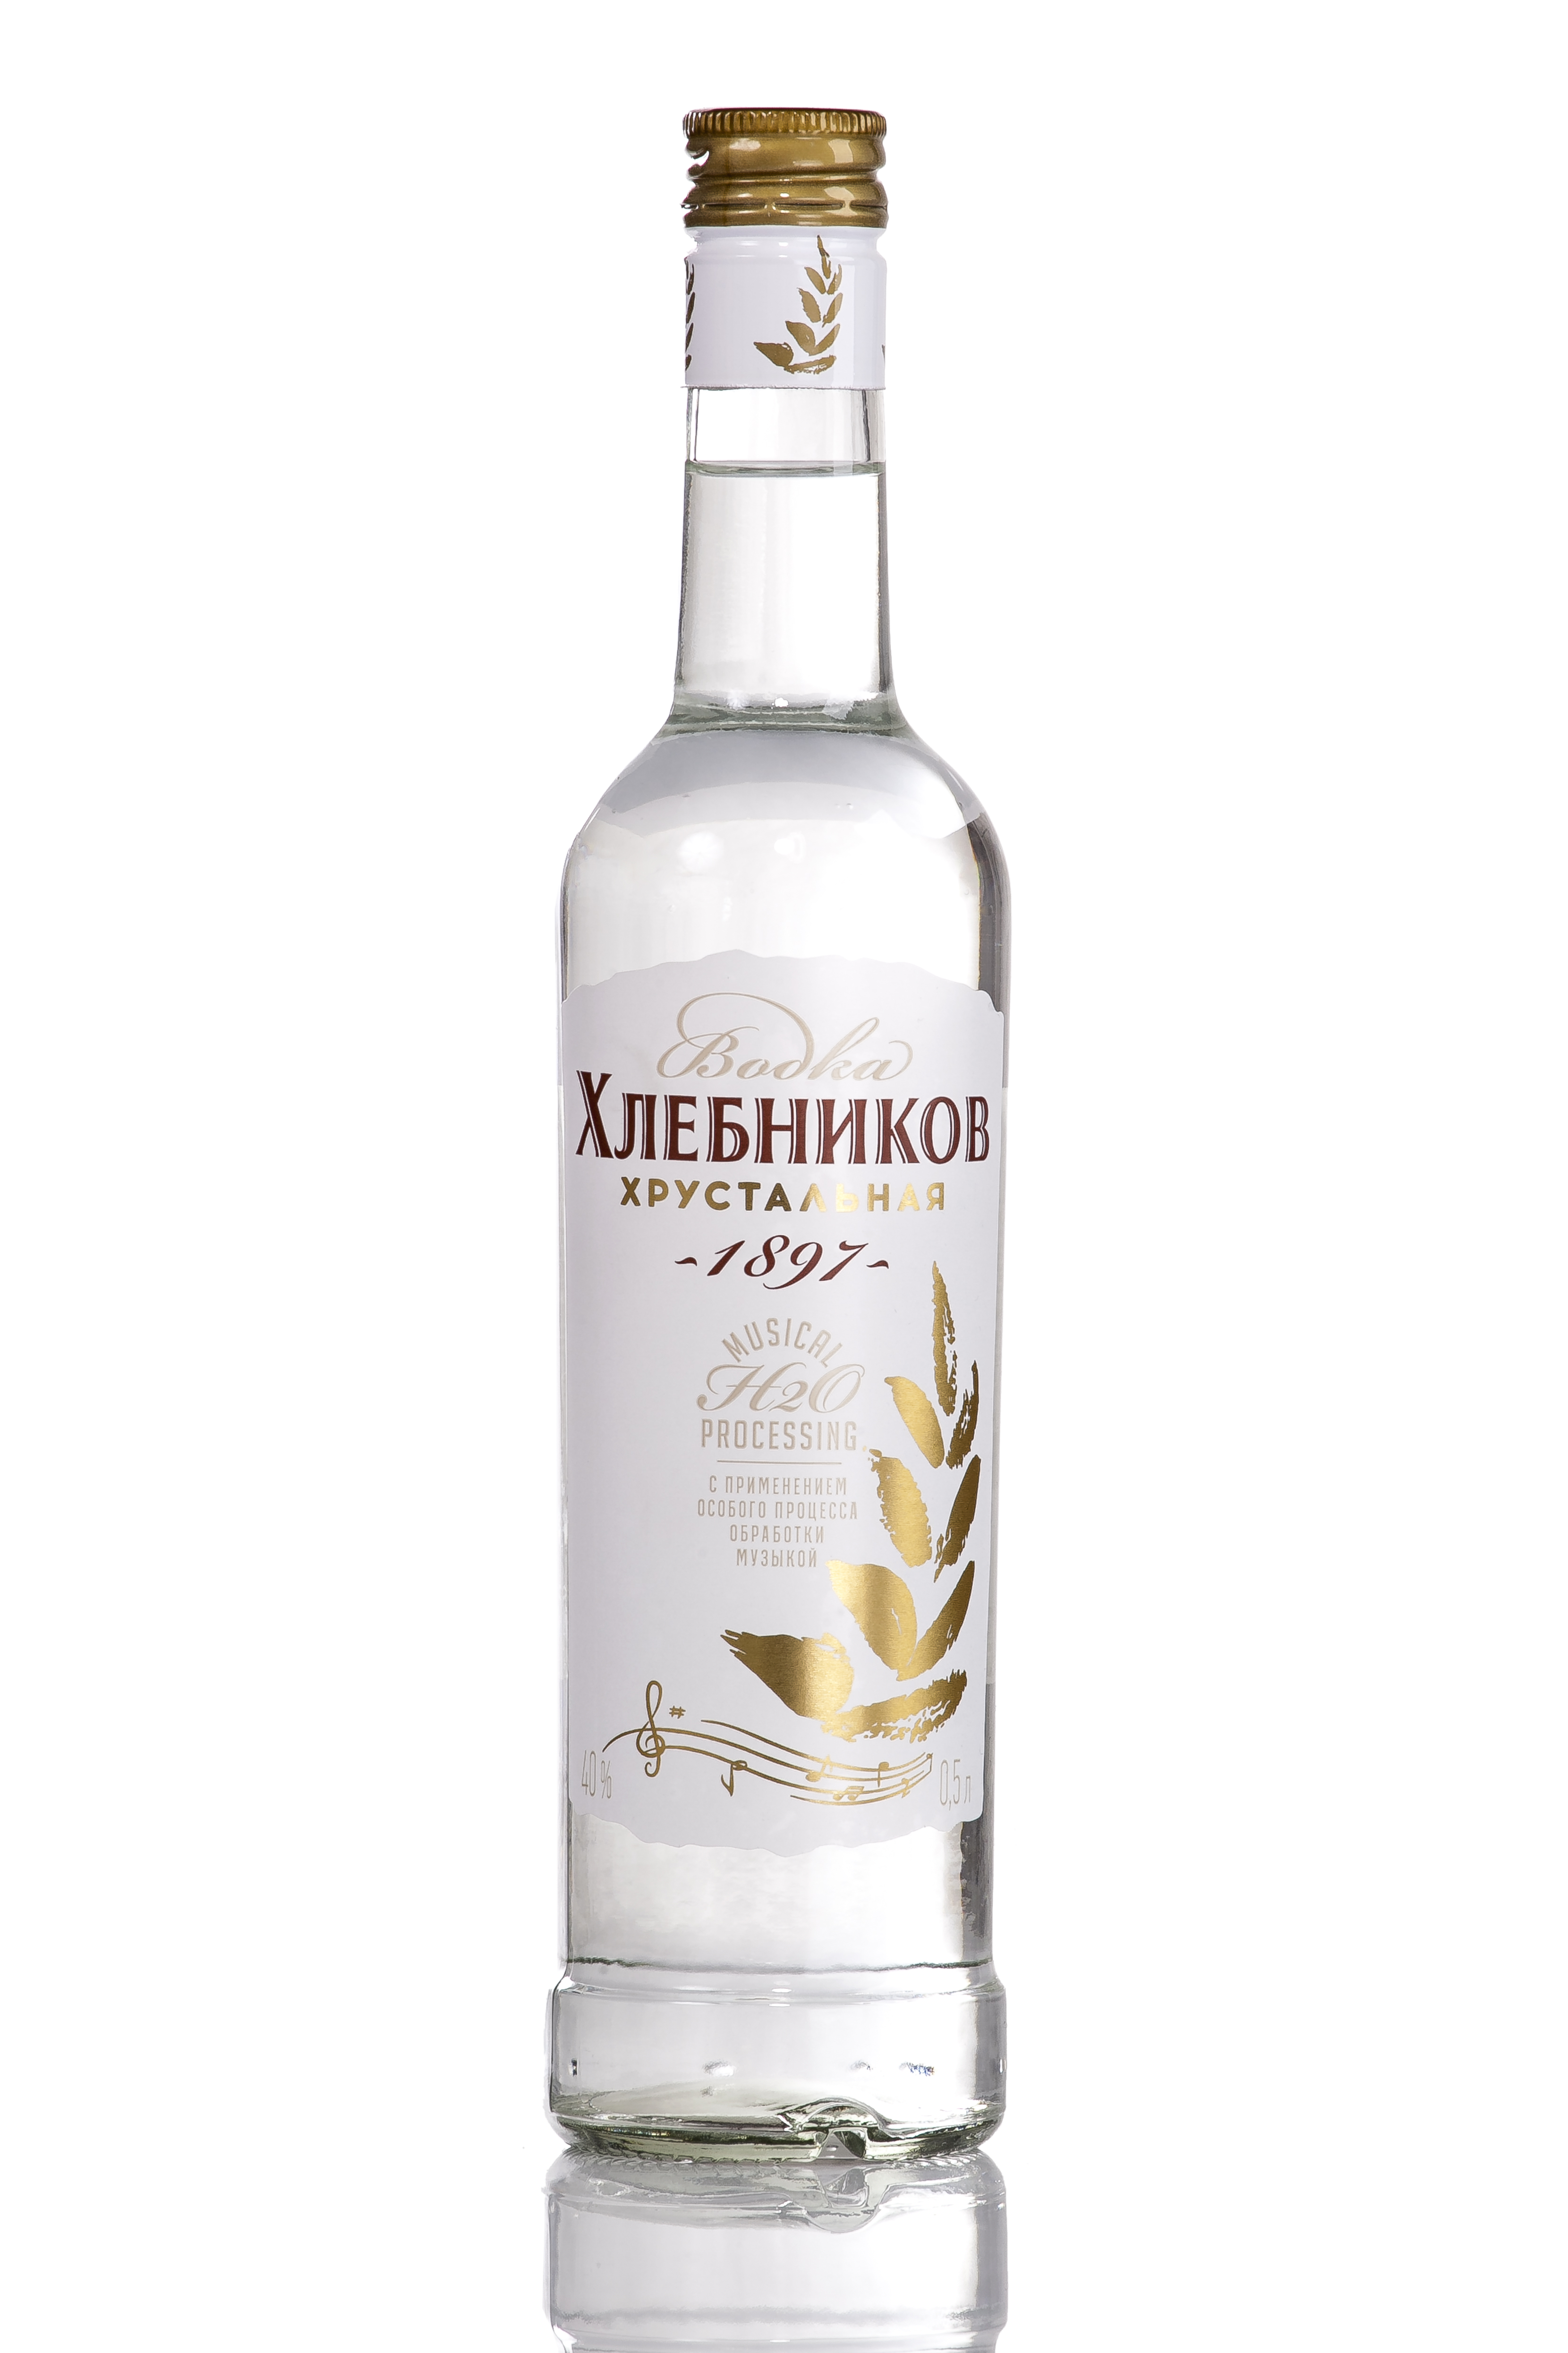 Vodka "Khlebnikov"